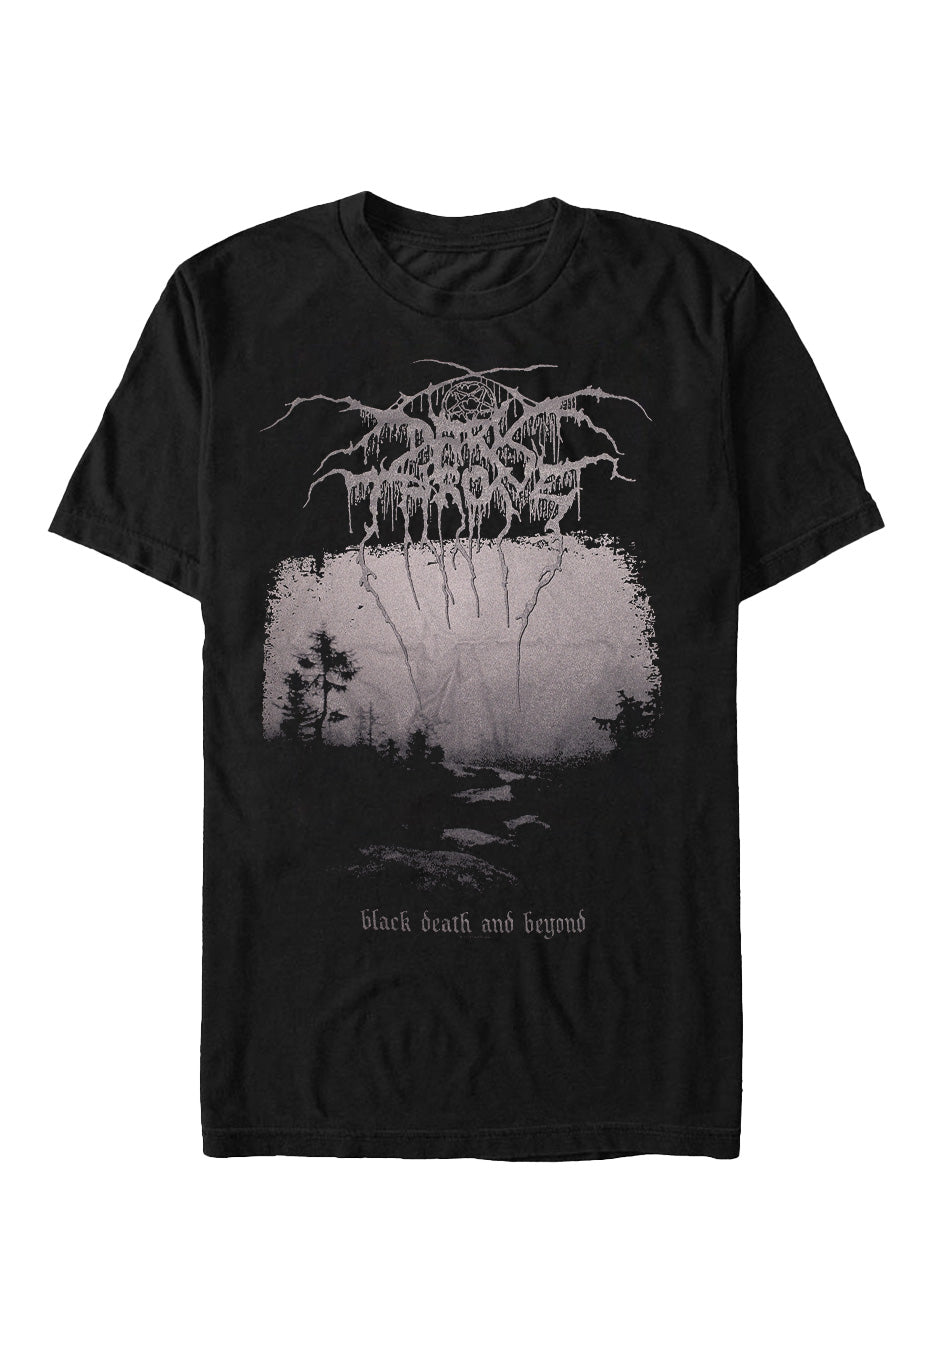 Darkthrone - Black Death And Beyond - T-Shirt